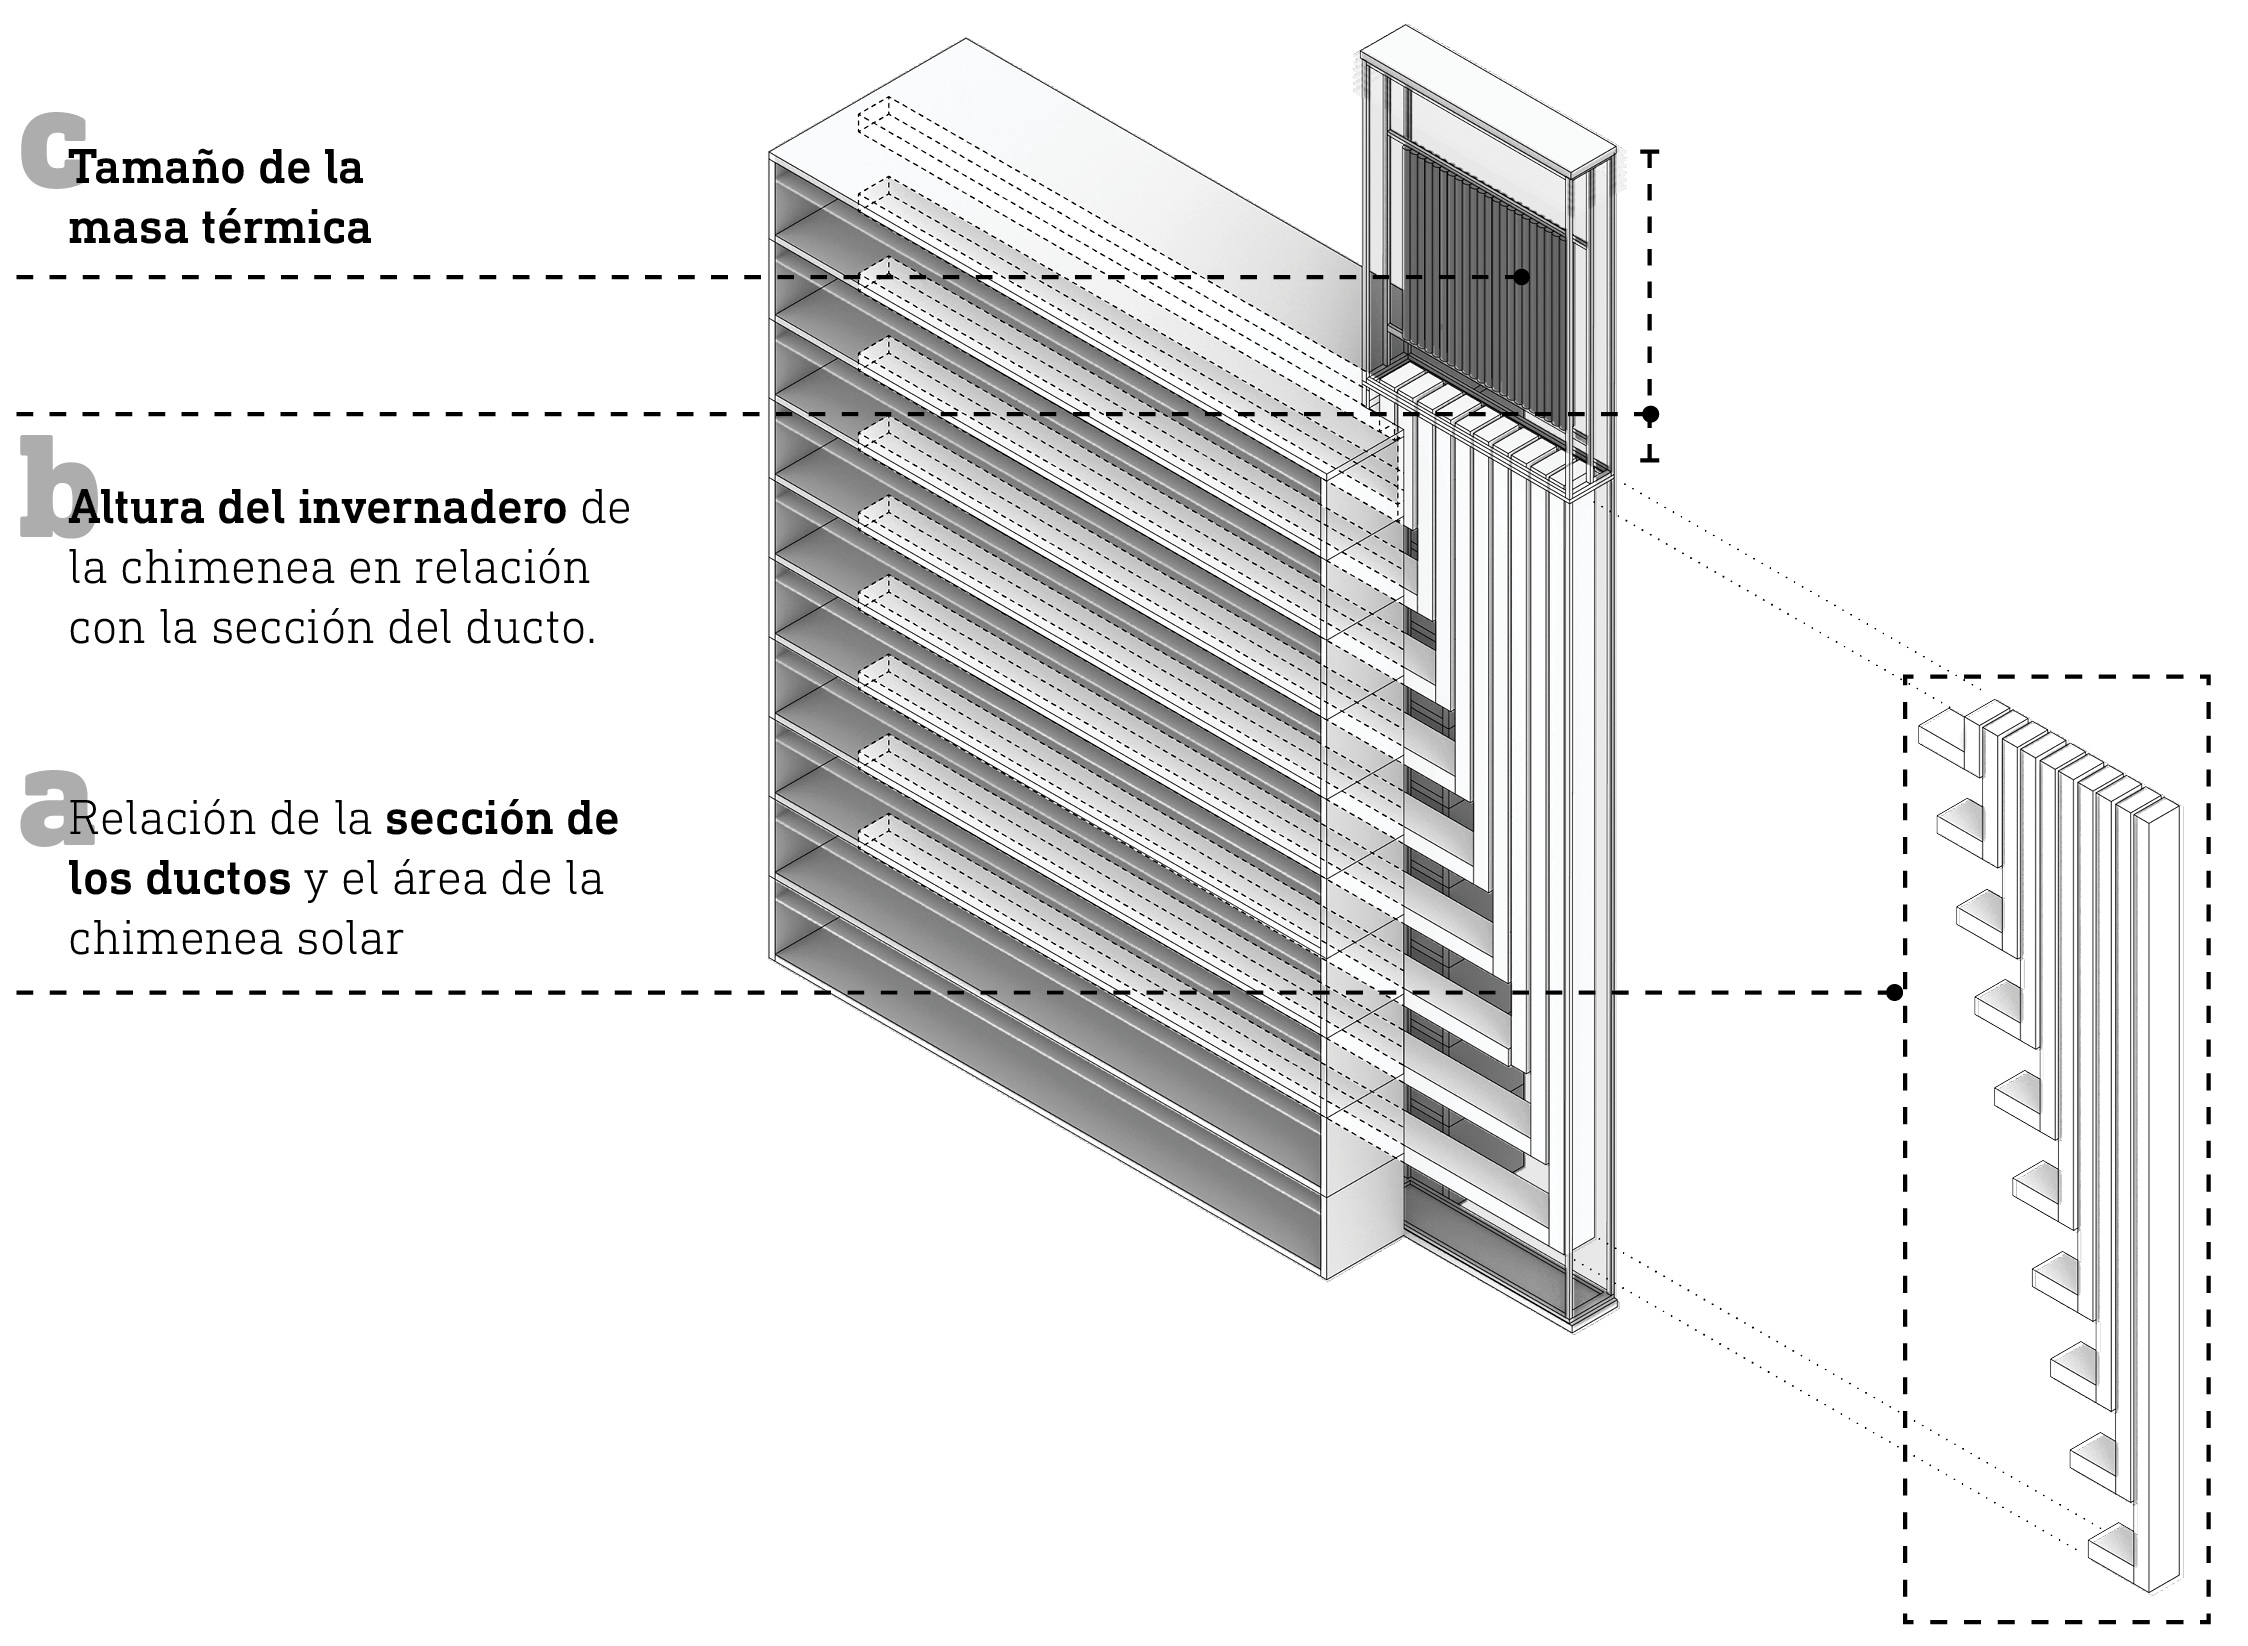 Esquema volumétrico de la distribución de los ductos por el edificio y su relación con la chimenea solar y el invernadero. Fuente: elaboración propia, 2022.